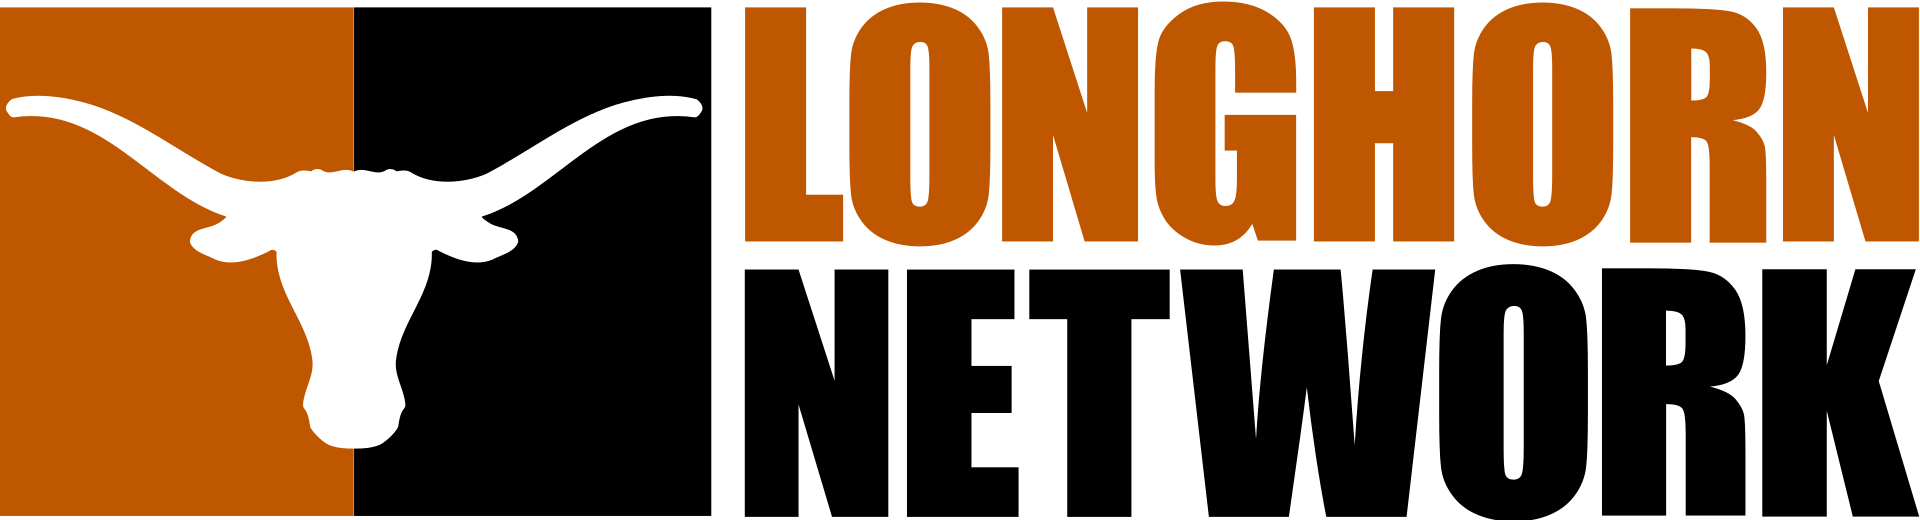 Longhorn-network